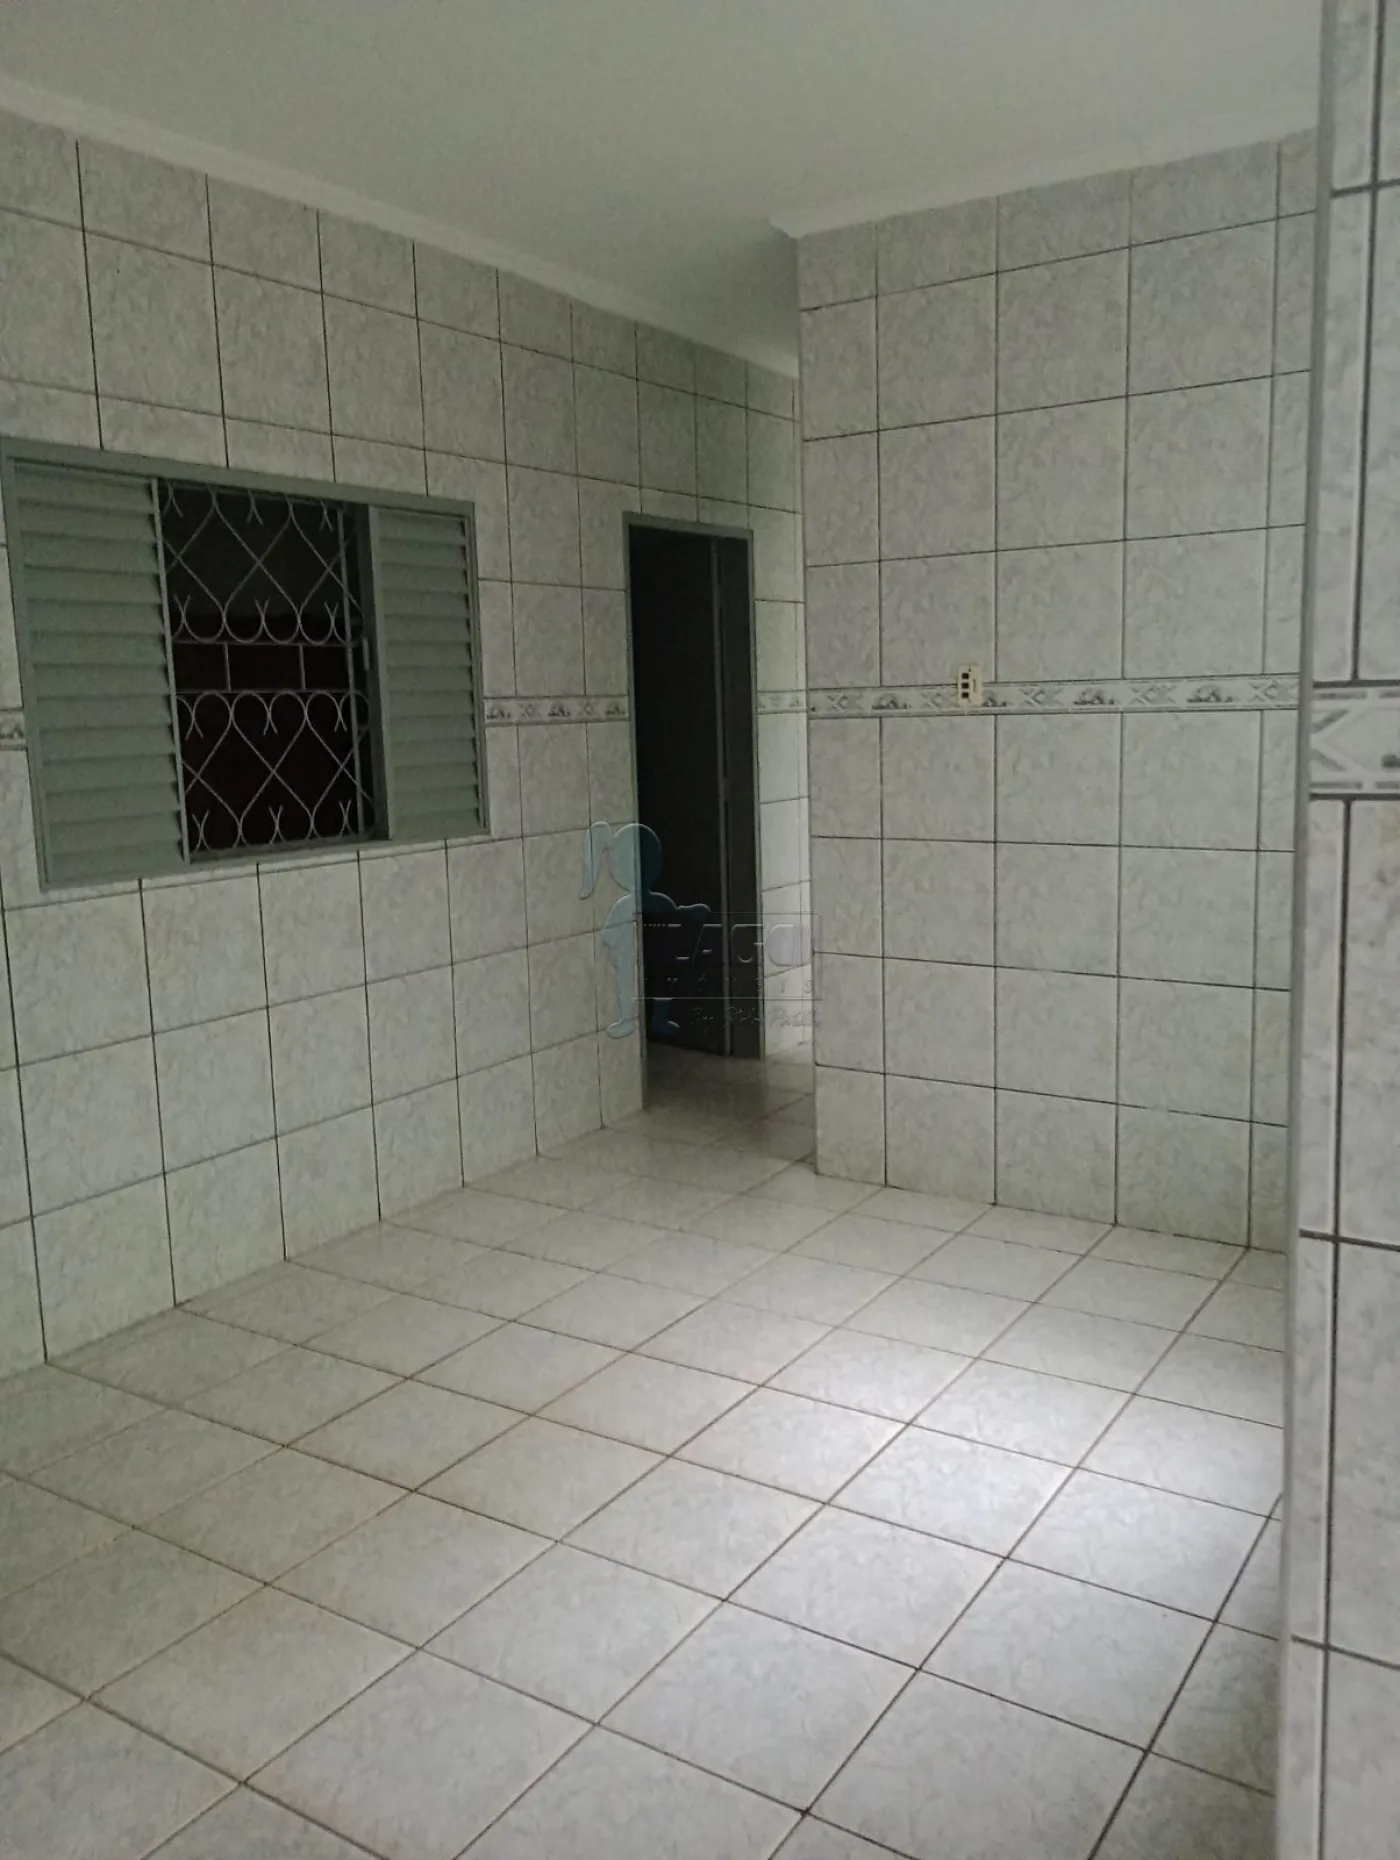 Comprar Casas / Padrão em Ribeirão Preto R$ 220.000,00 - Foto 7